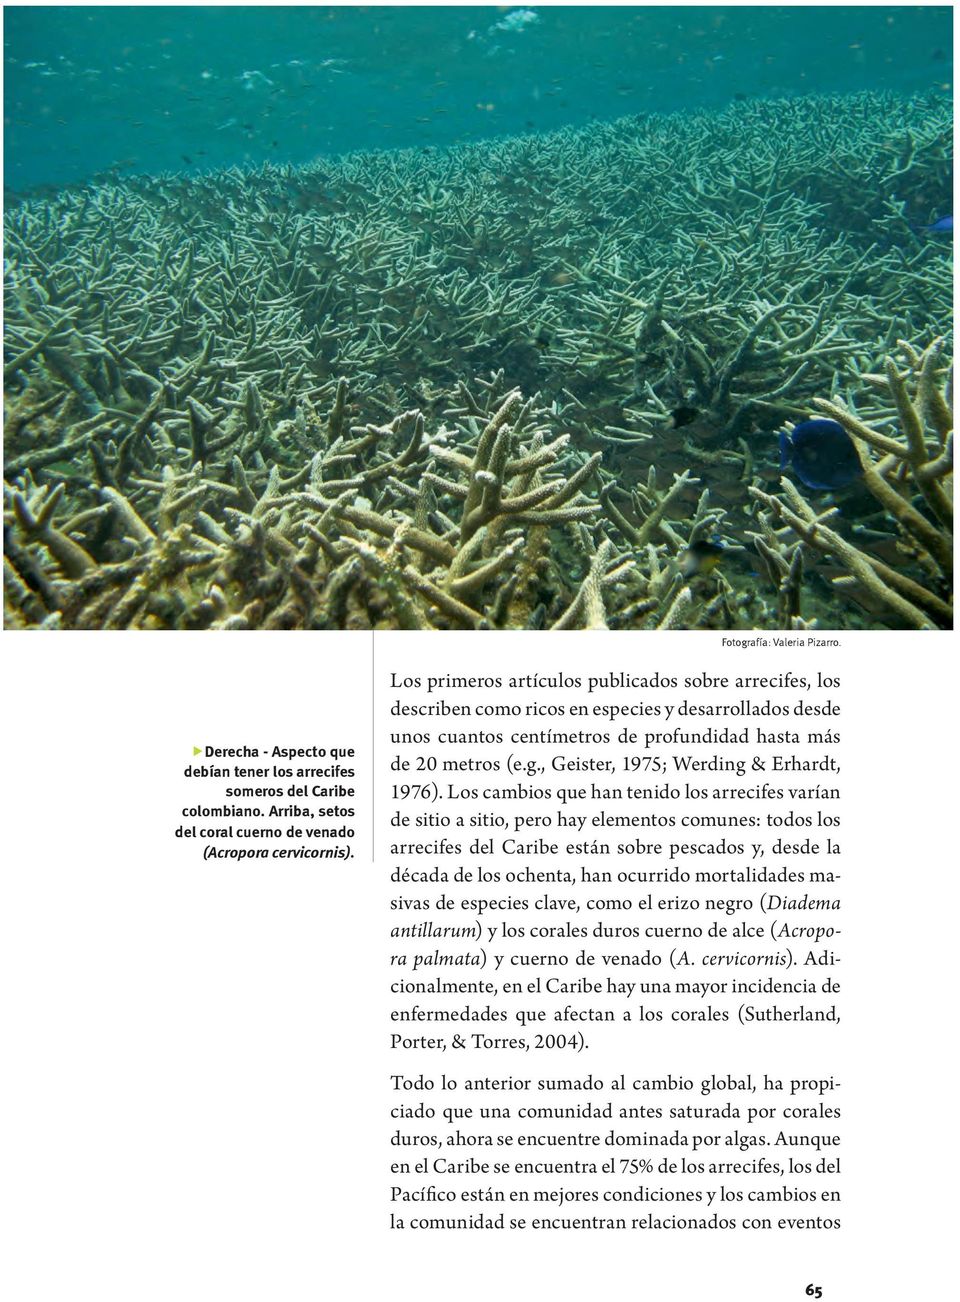 Los primeros artículos publicados sobre arrecifes, los describen como ricos en especies y desarrollados desde unos cuantos centímetros de profundidad hasta más de 20 metros (e.g.